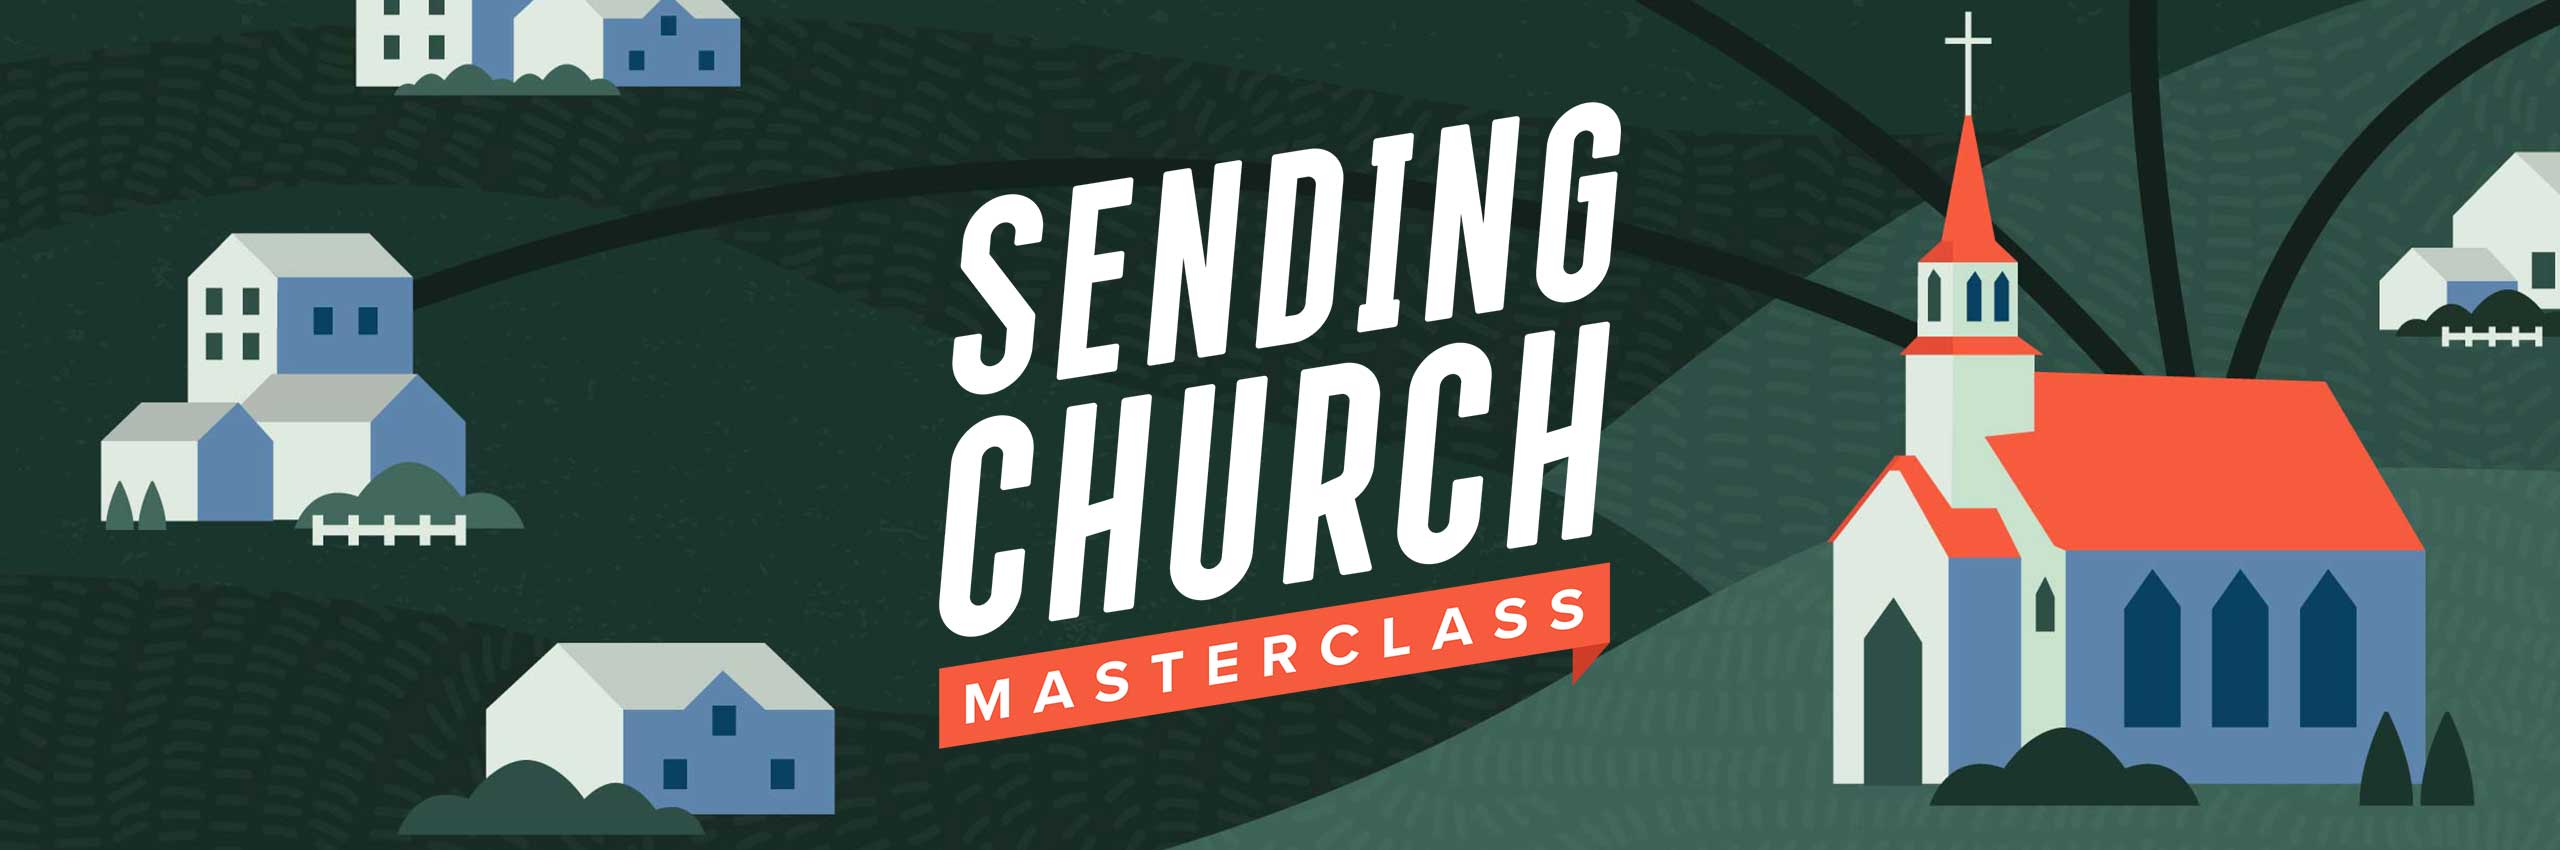 sending-church-masterclass-feature